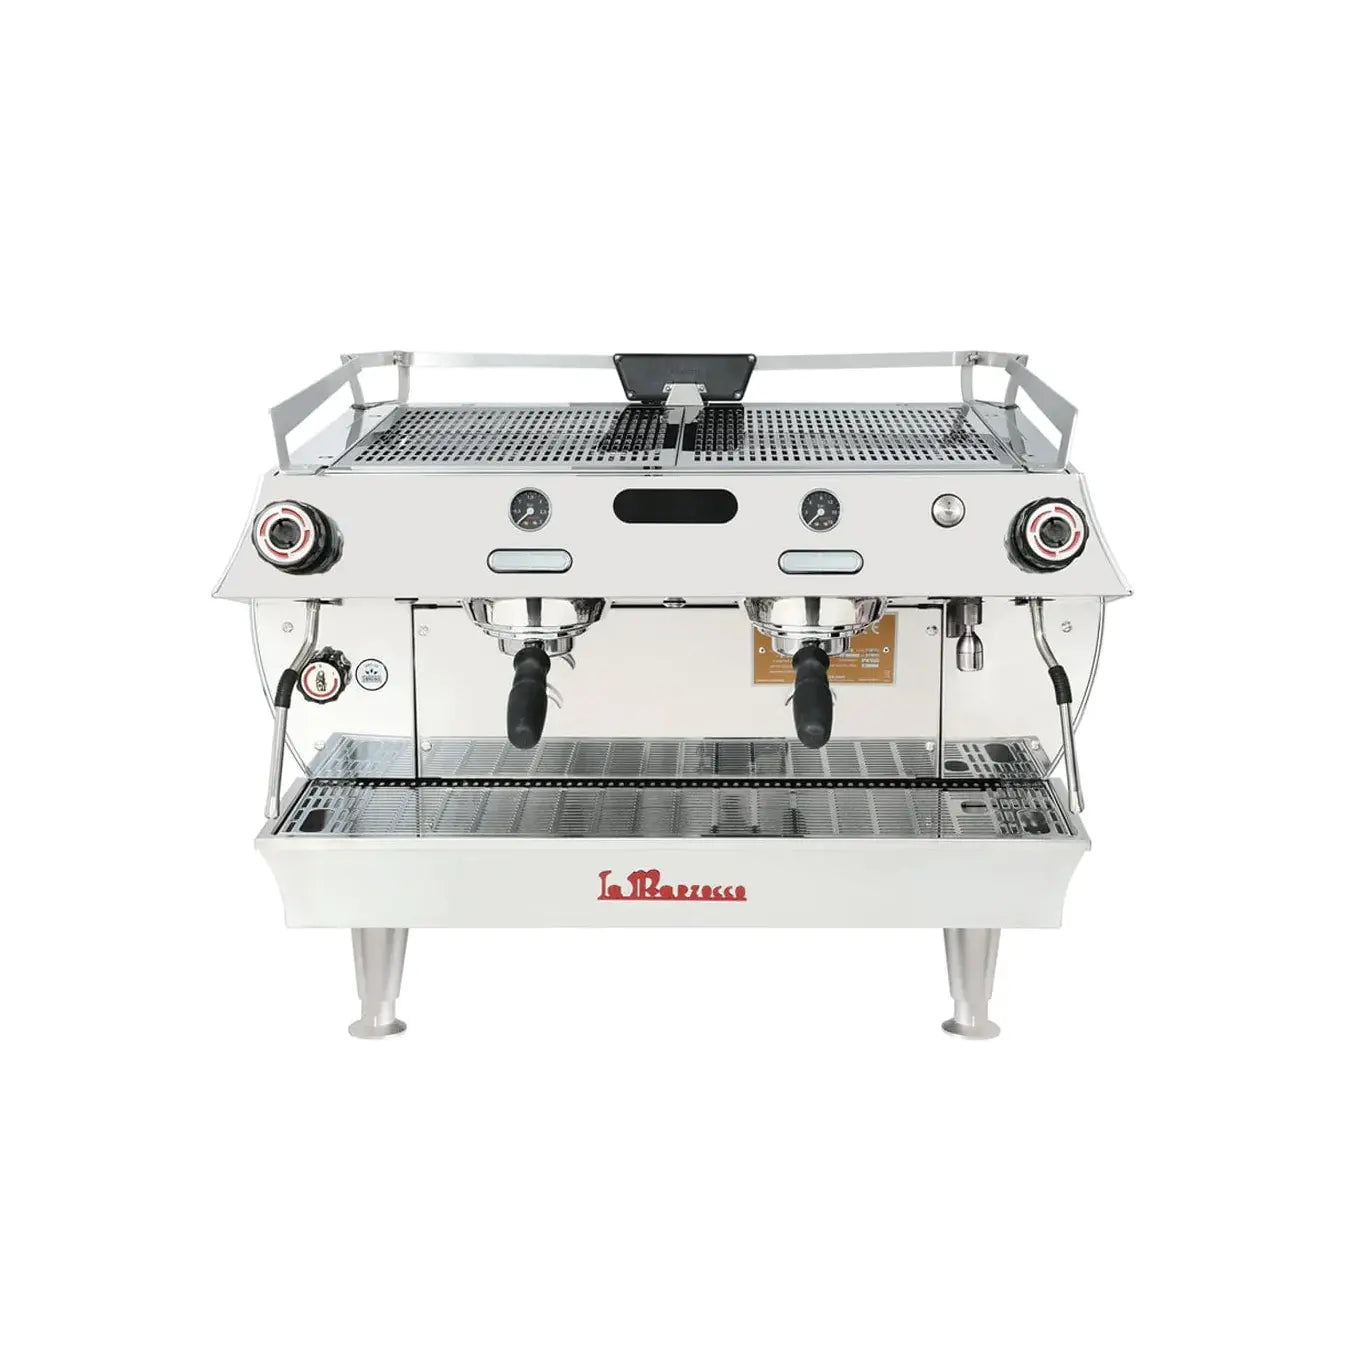 La Marzocco GB5 S - Semi-automatic (EE) 2 Group Espresso Machine La Marzocco